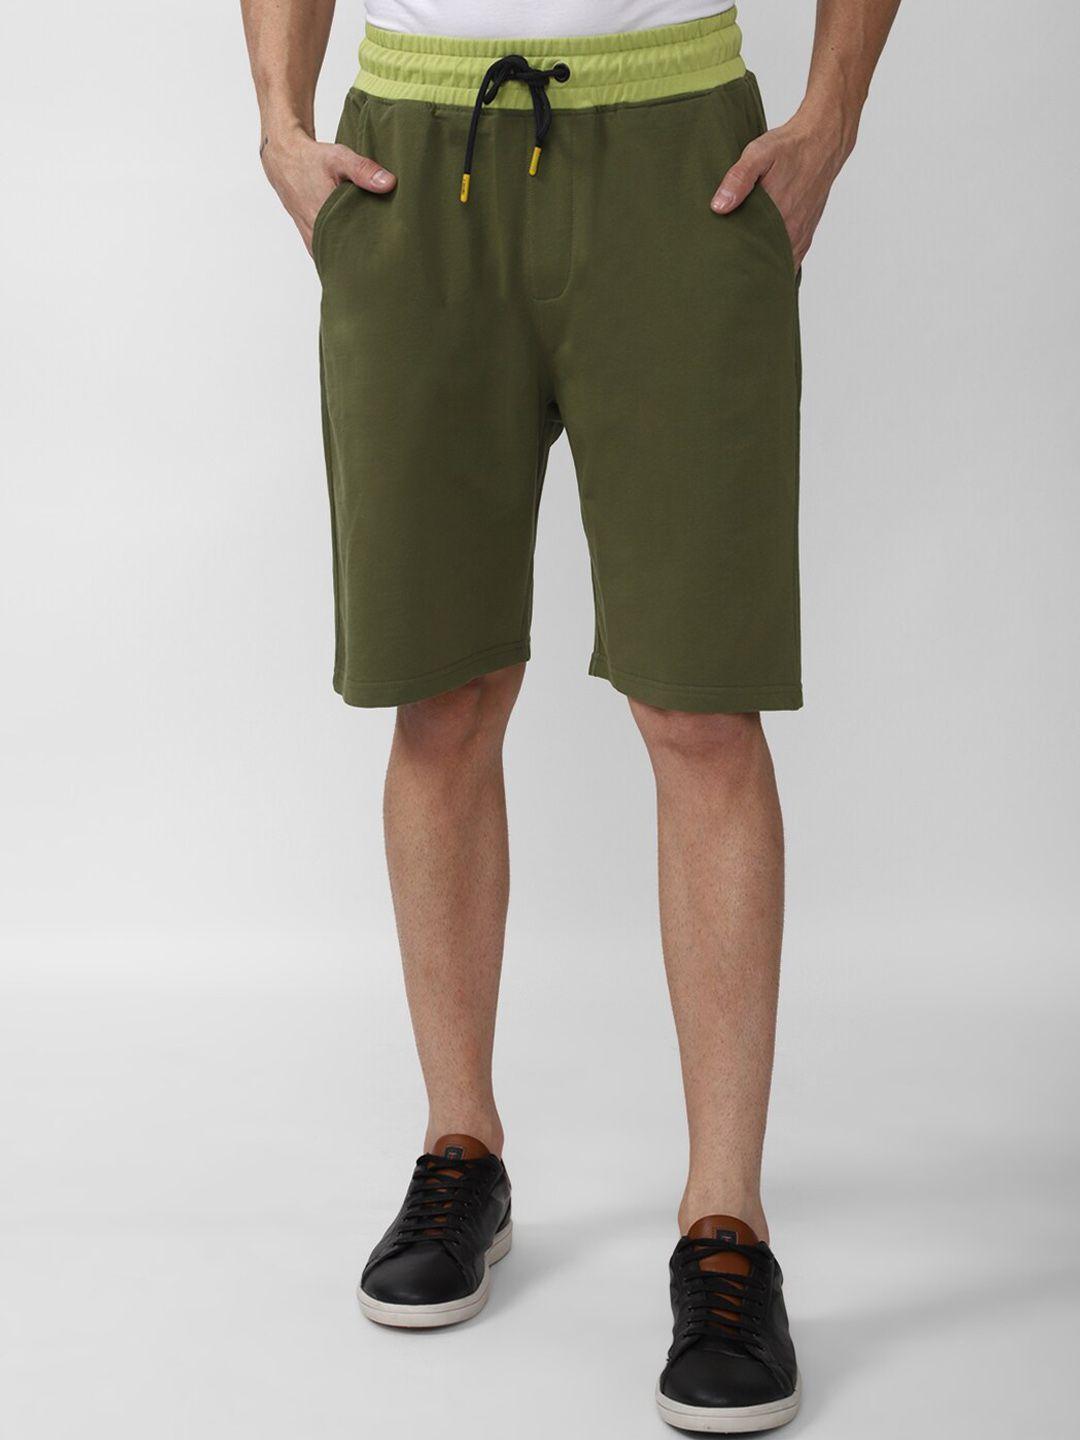 forever-21-men-olive-green-shorts